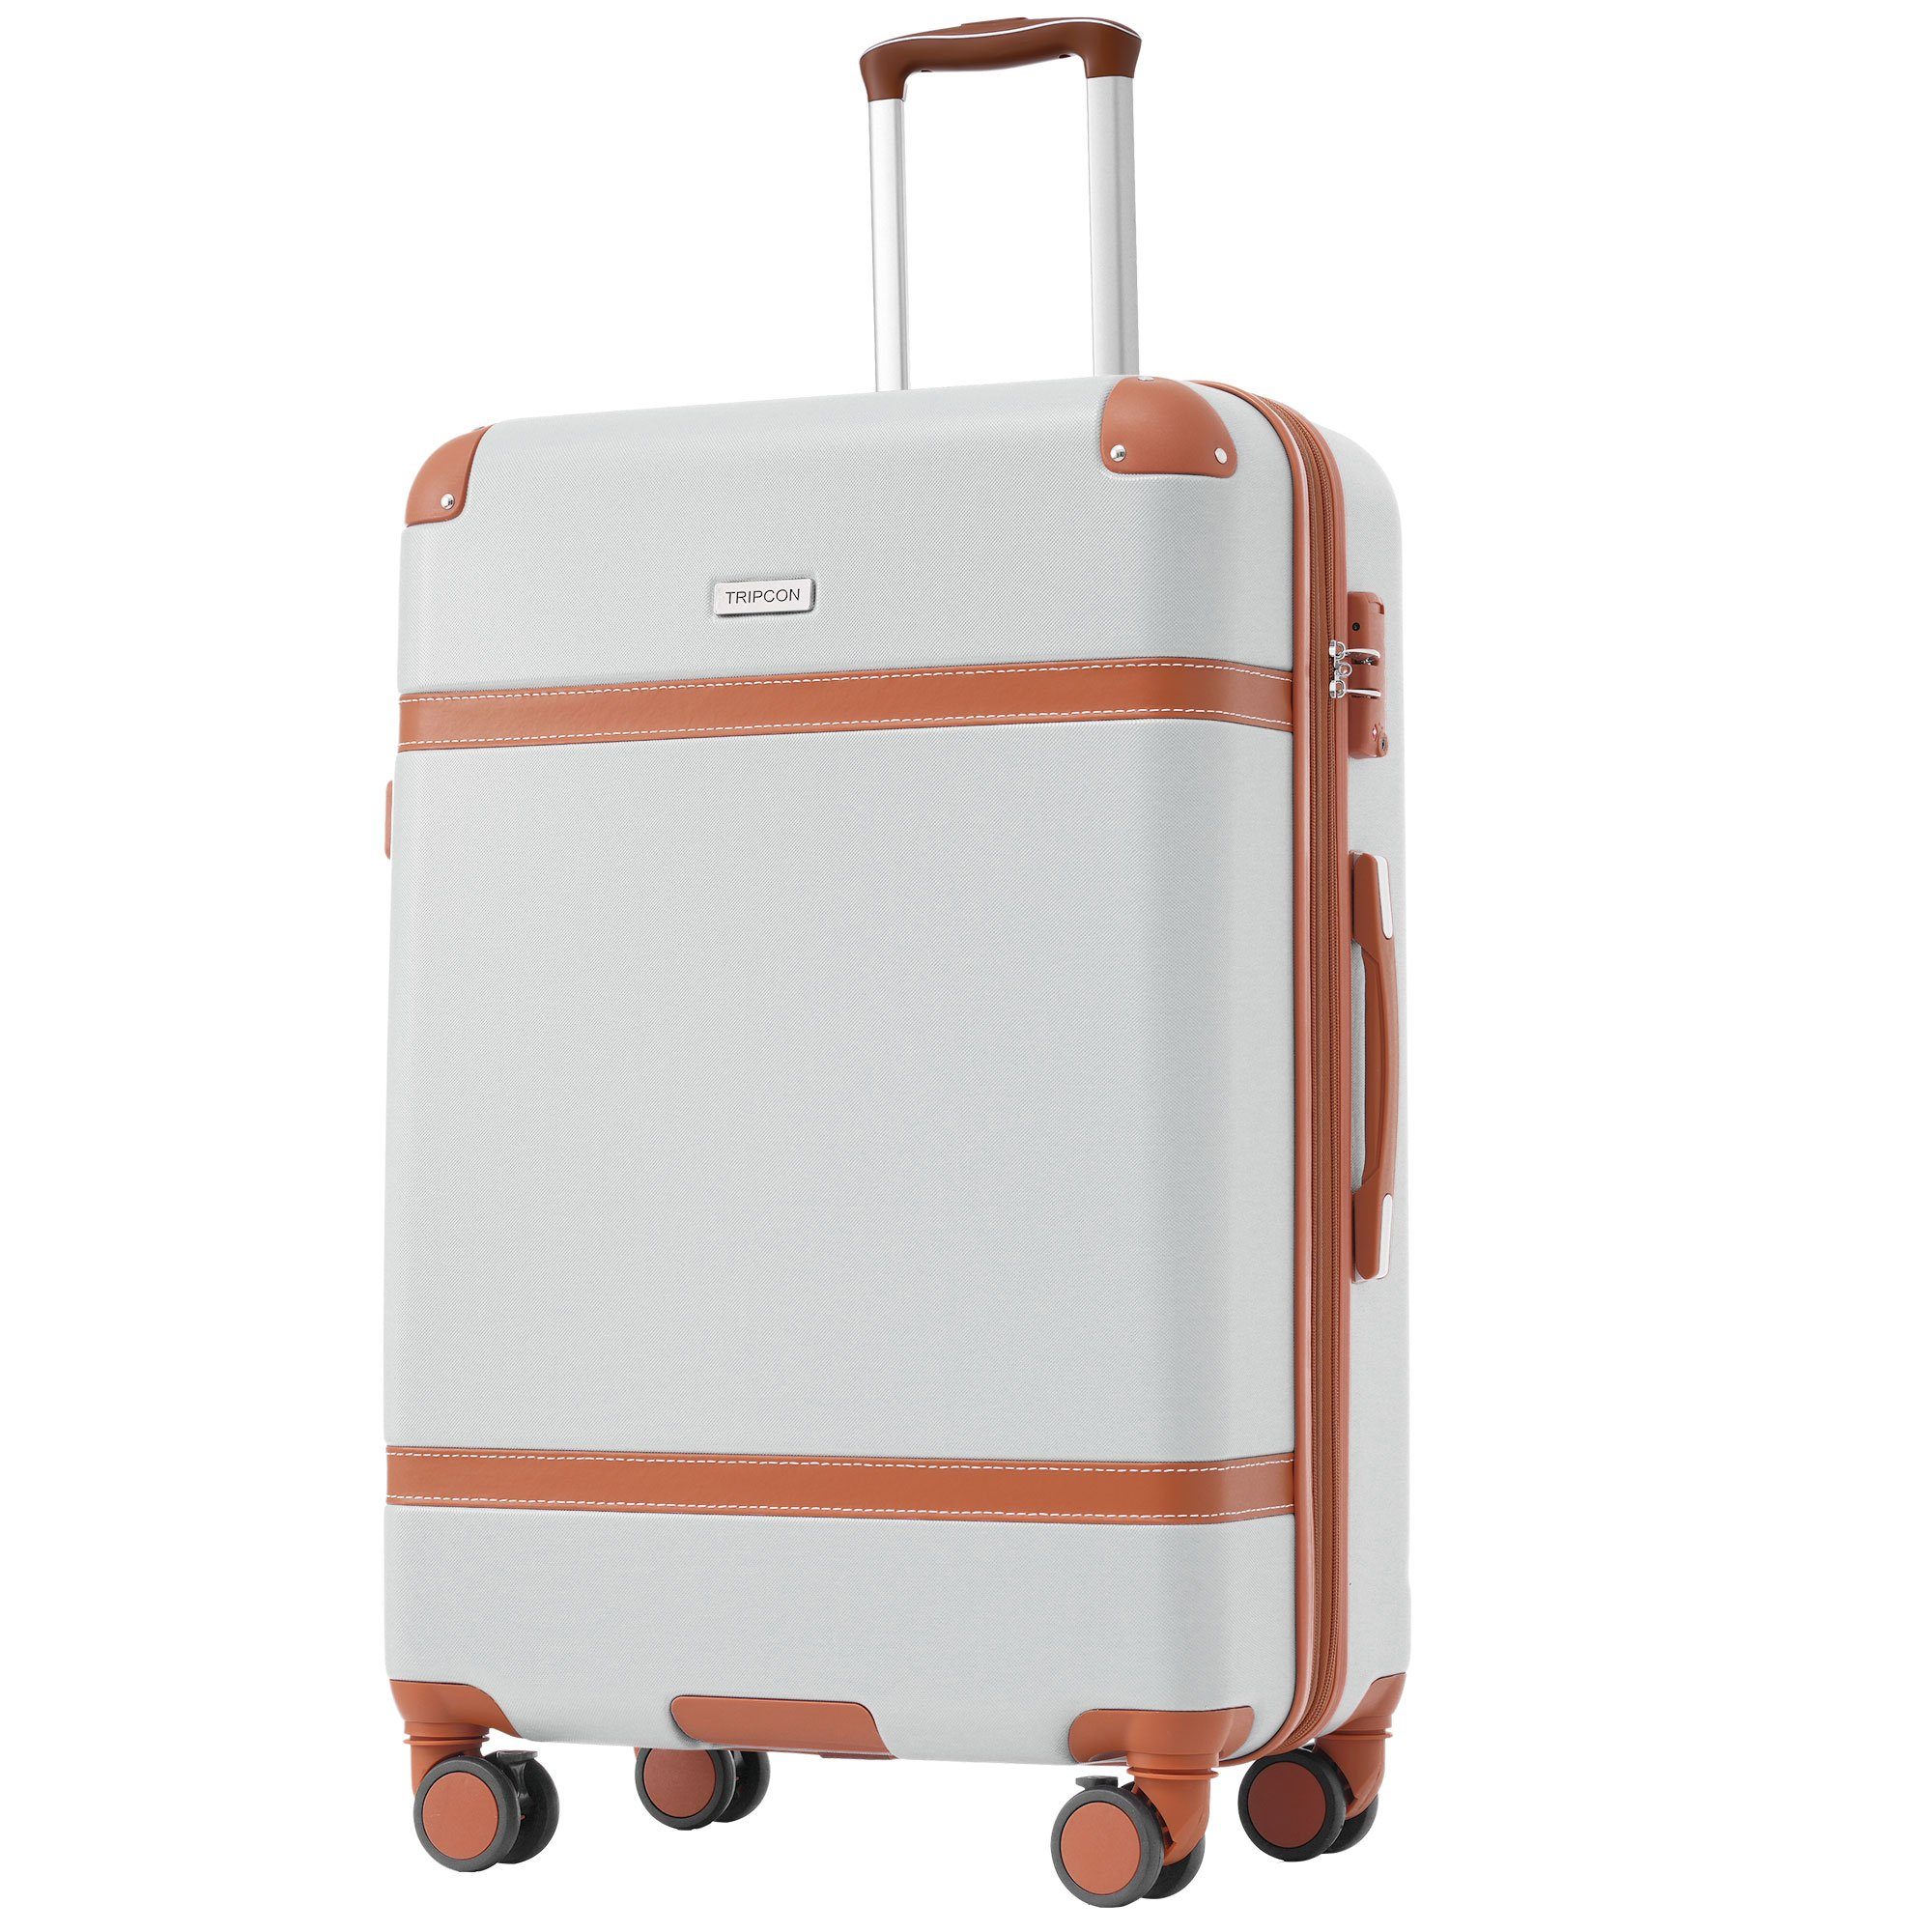 GLIESE Koffer Trolleys, 66 x 44 x 26.5 cm Weiß